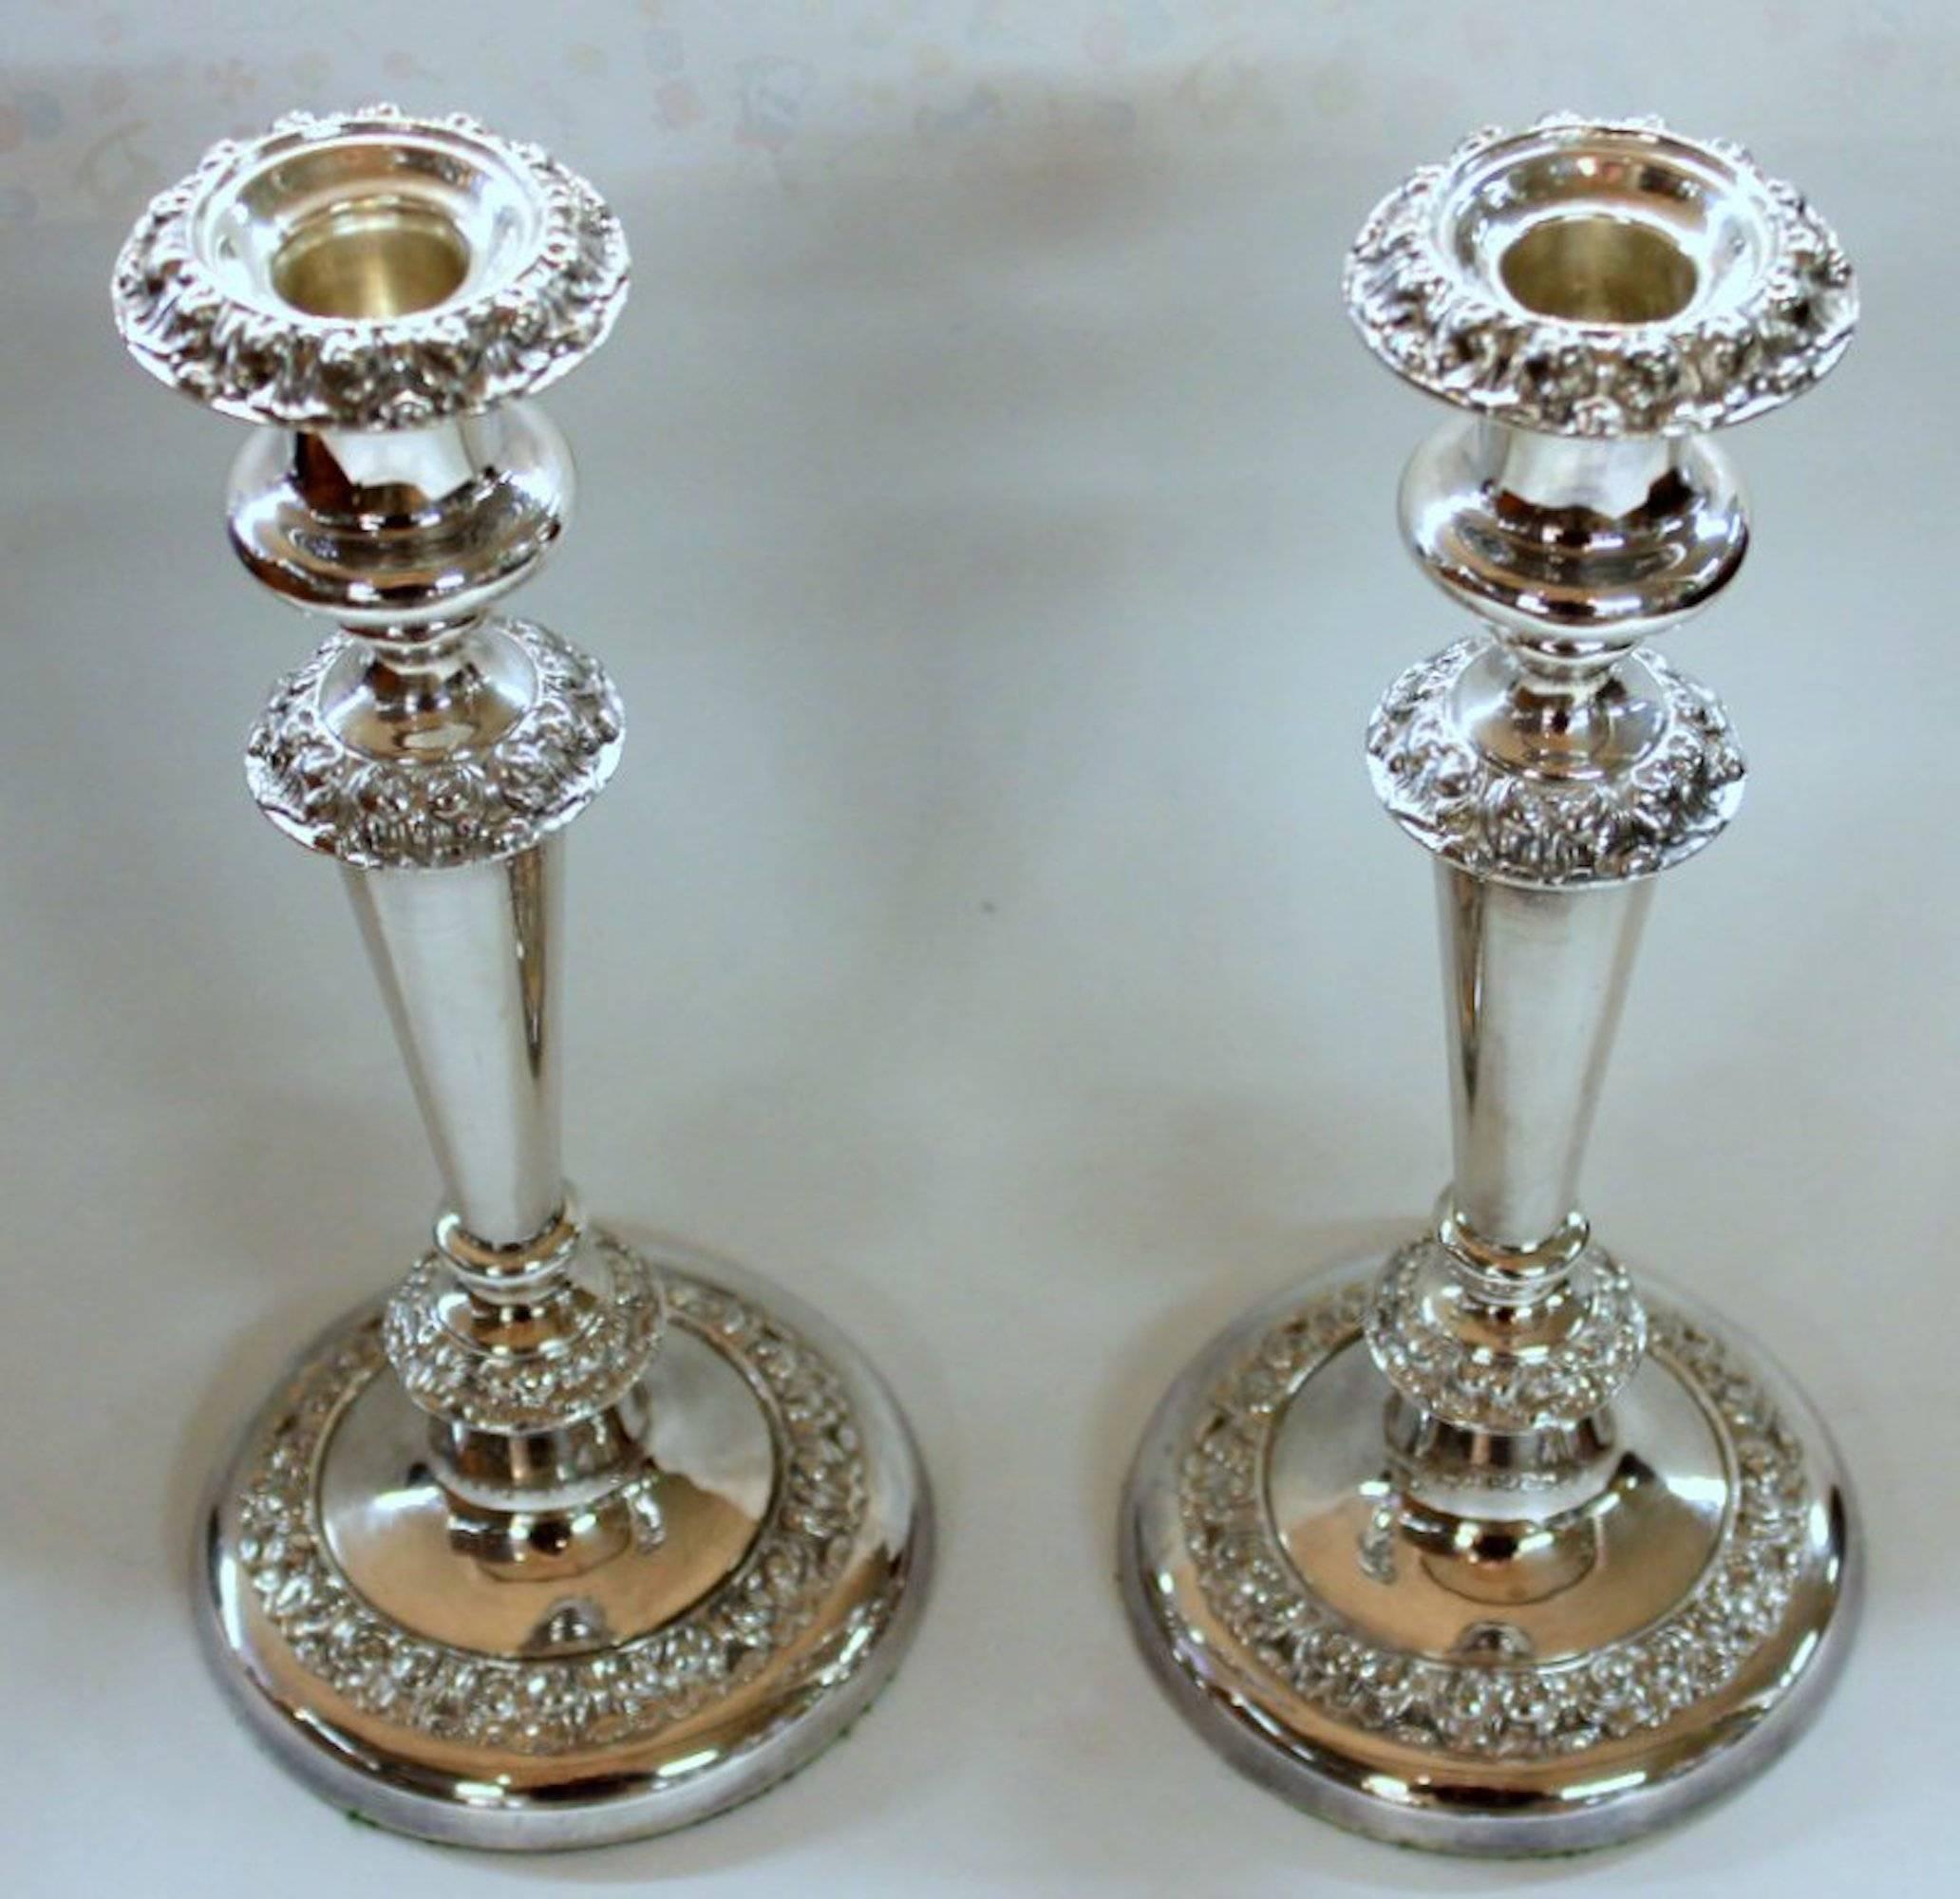 Paar hervorragende Qualität George IV Rokoko Grenze runde Basis Kerzenhalter

Außergewöhnliche applizierte Rokoko-Bordüren; abnehmbare Bobeches, kein Plattenverschleiß festgestellt.